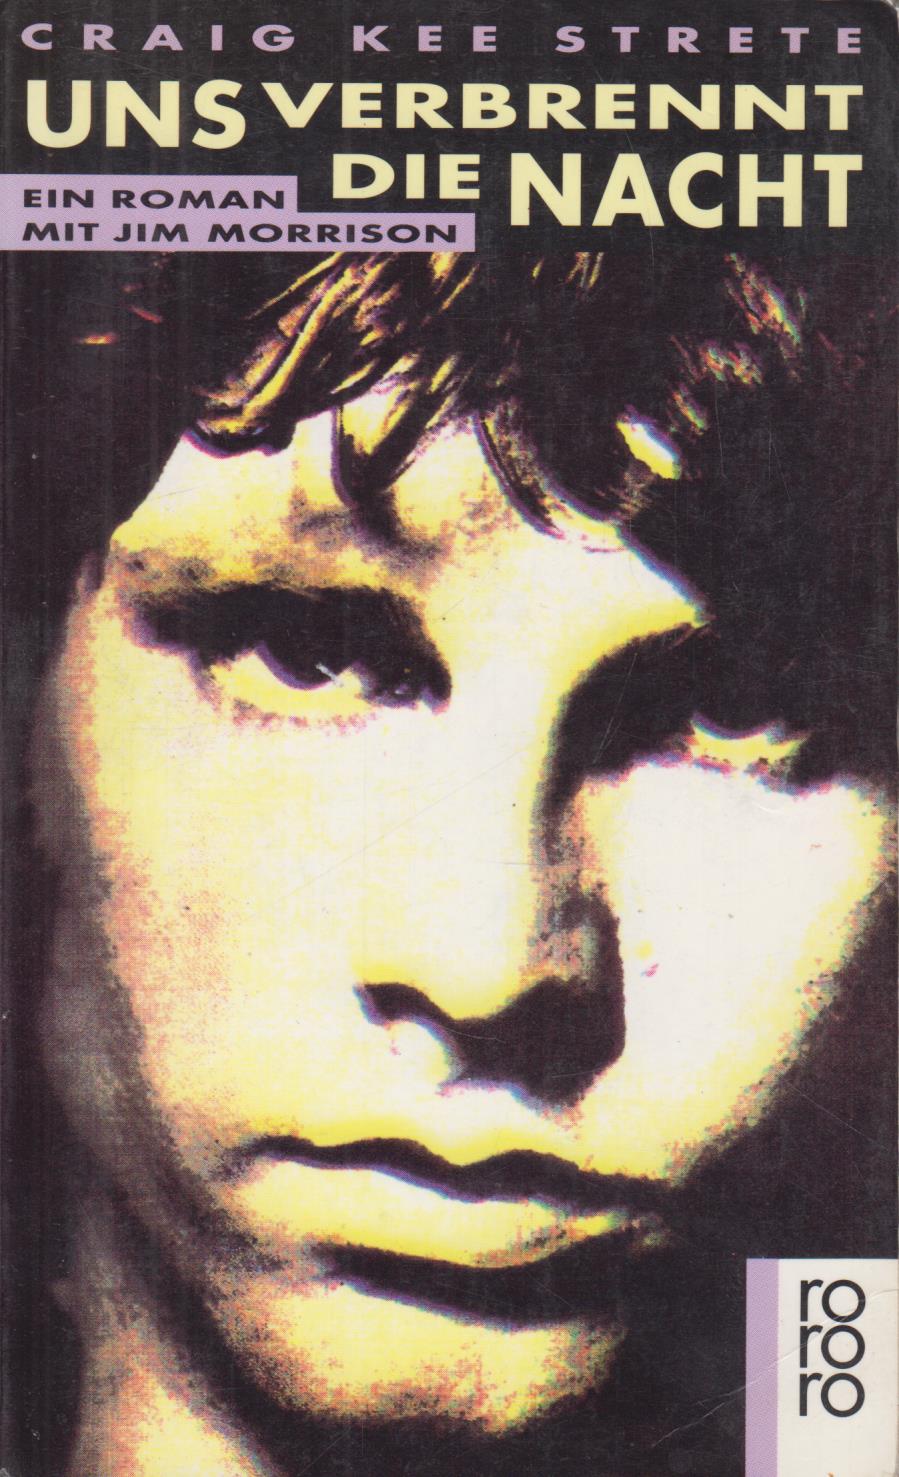 Uns verbrennt die Nacht Ein Roman mit Jim Morrison - Kee Strete, Craig